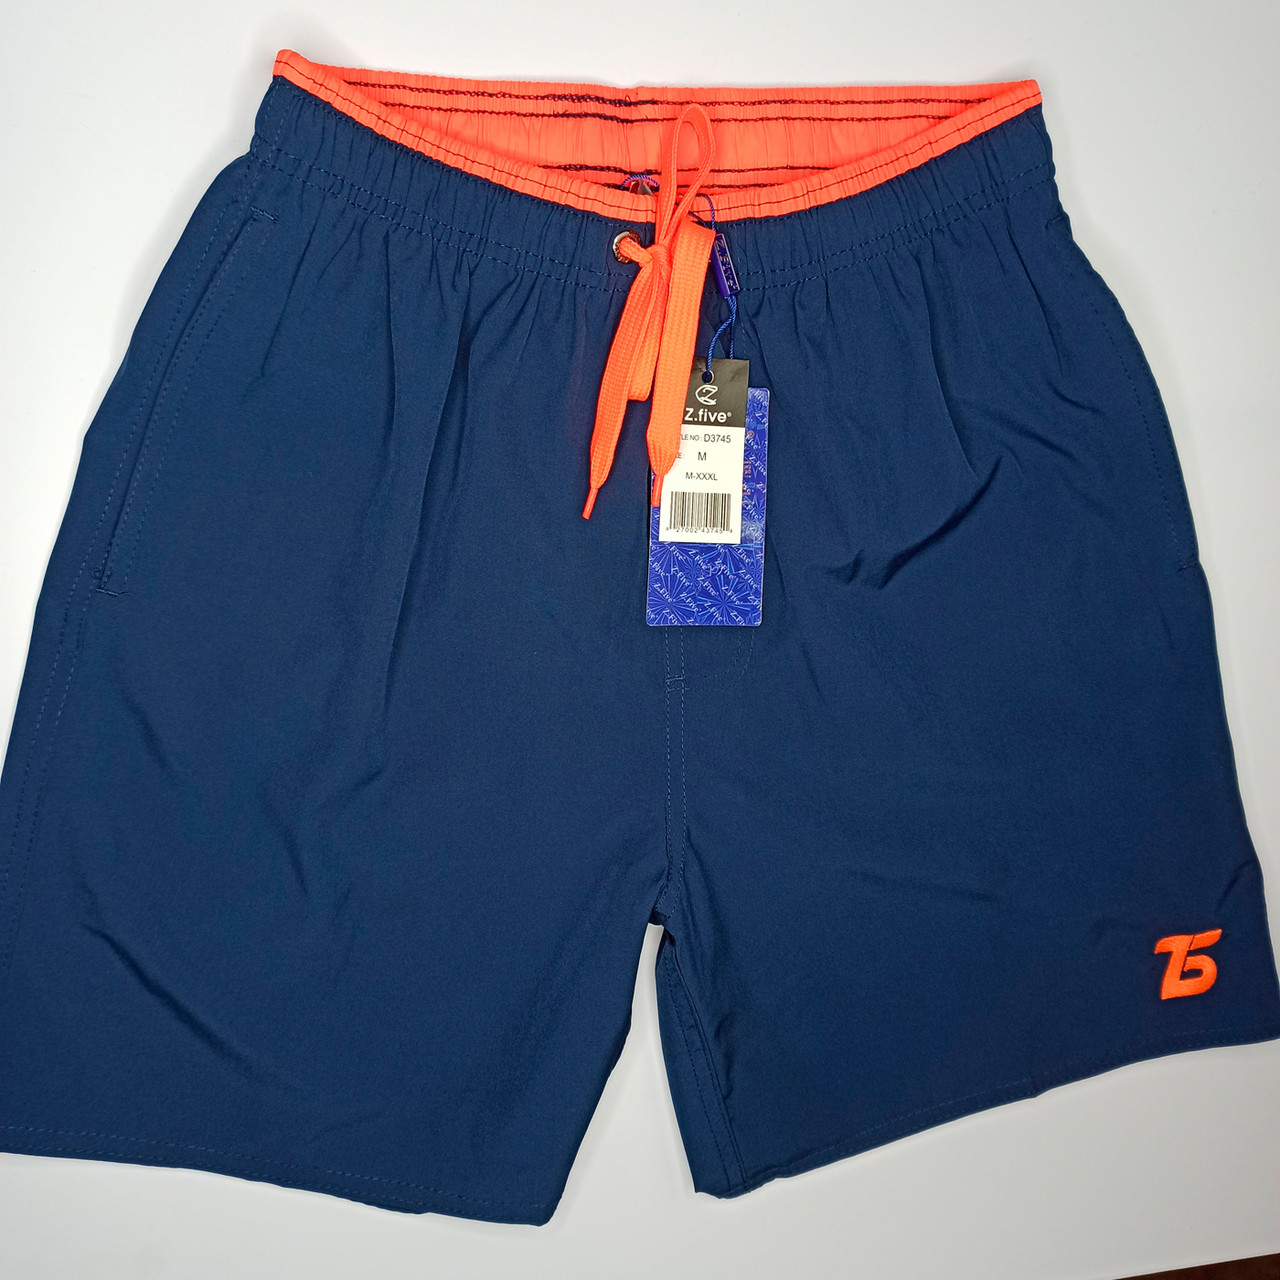 Мужские шорты Z.Five 3745 синие с оранжевым 44  48  размер